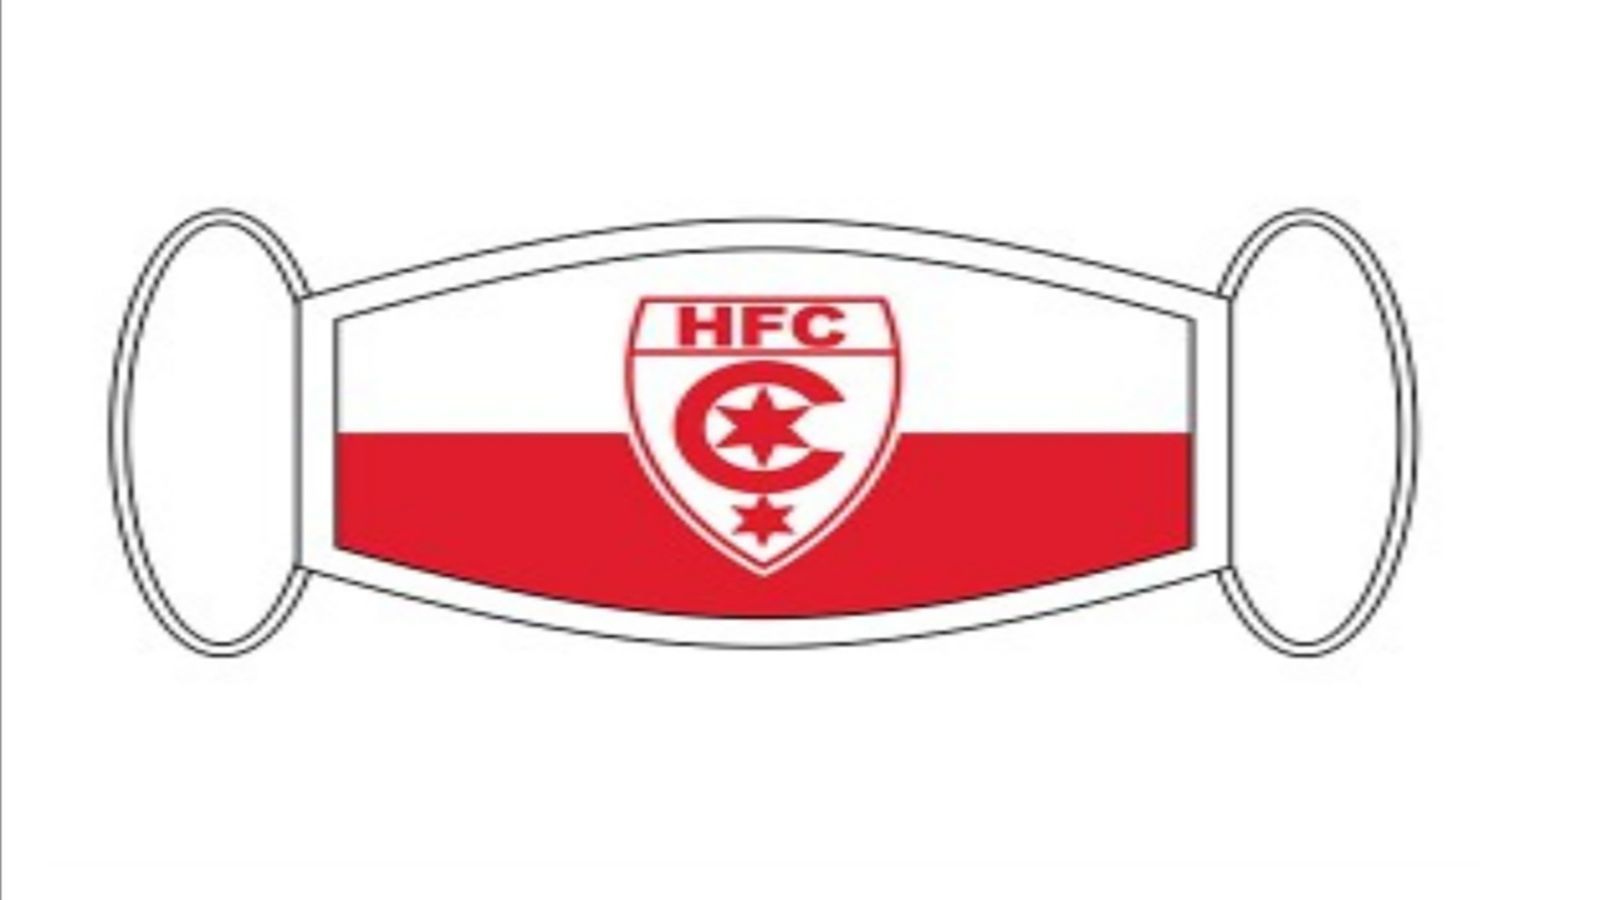 
                <strong>Hallescher FC</strong><br>
                Auch der HFC bringt die Masken an seine Fans.
              